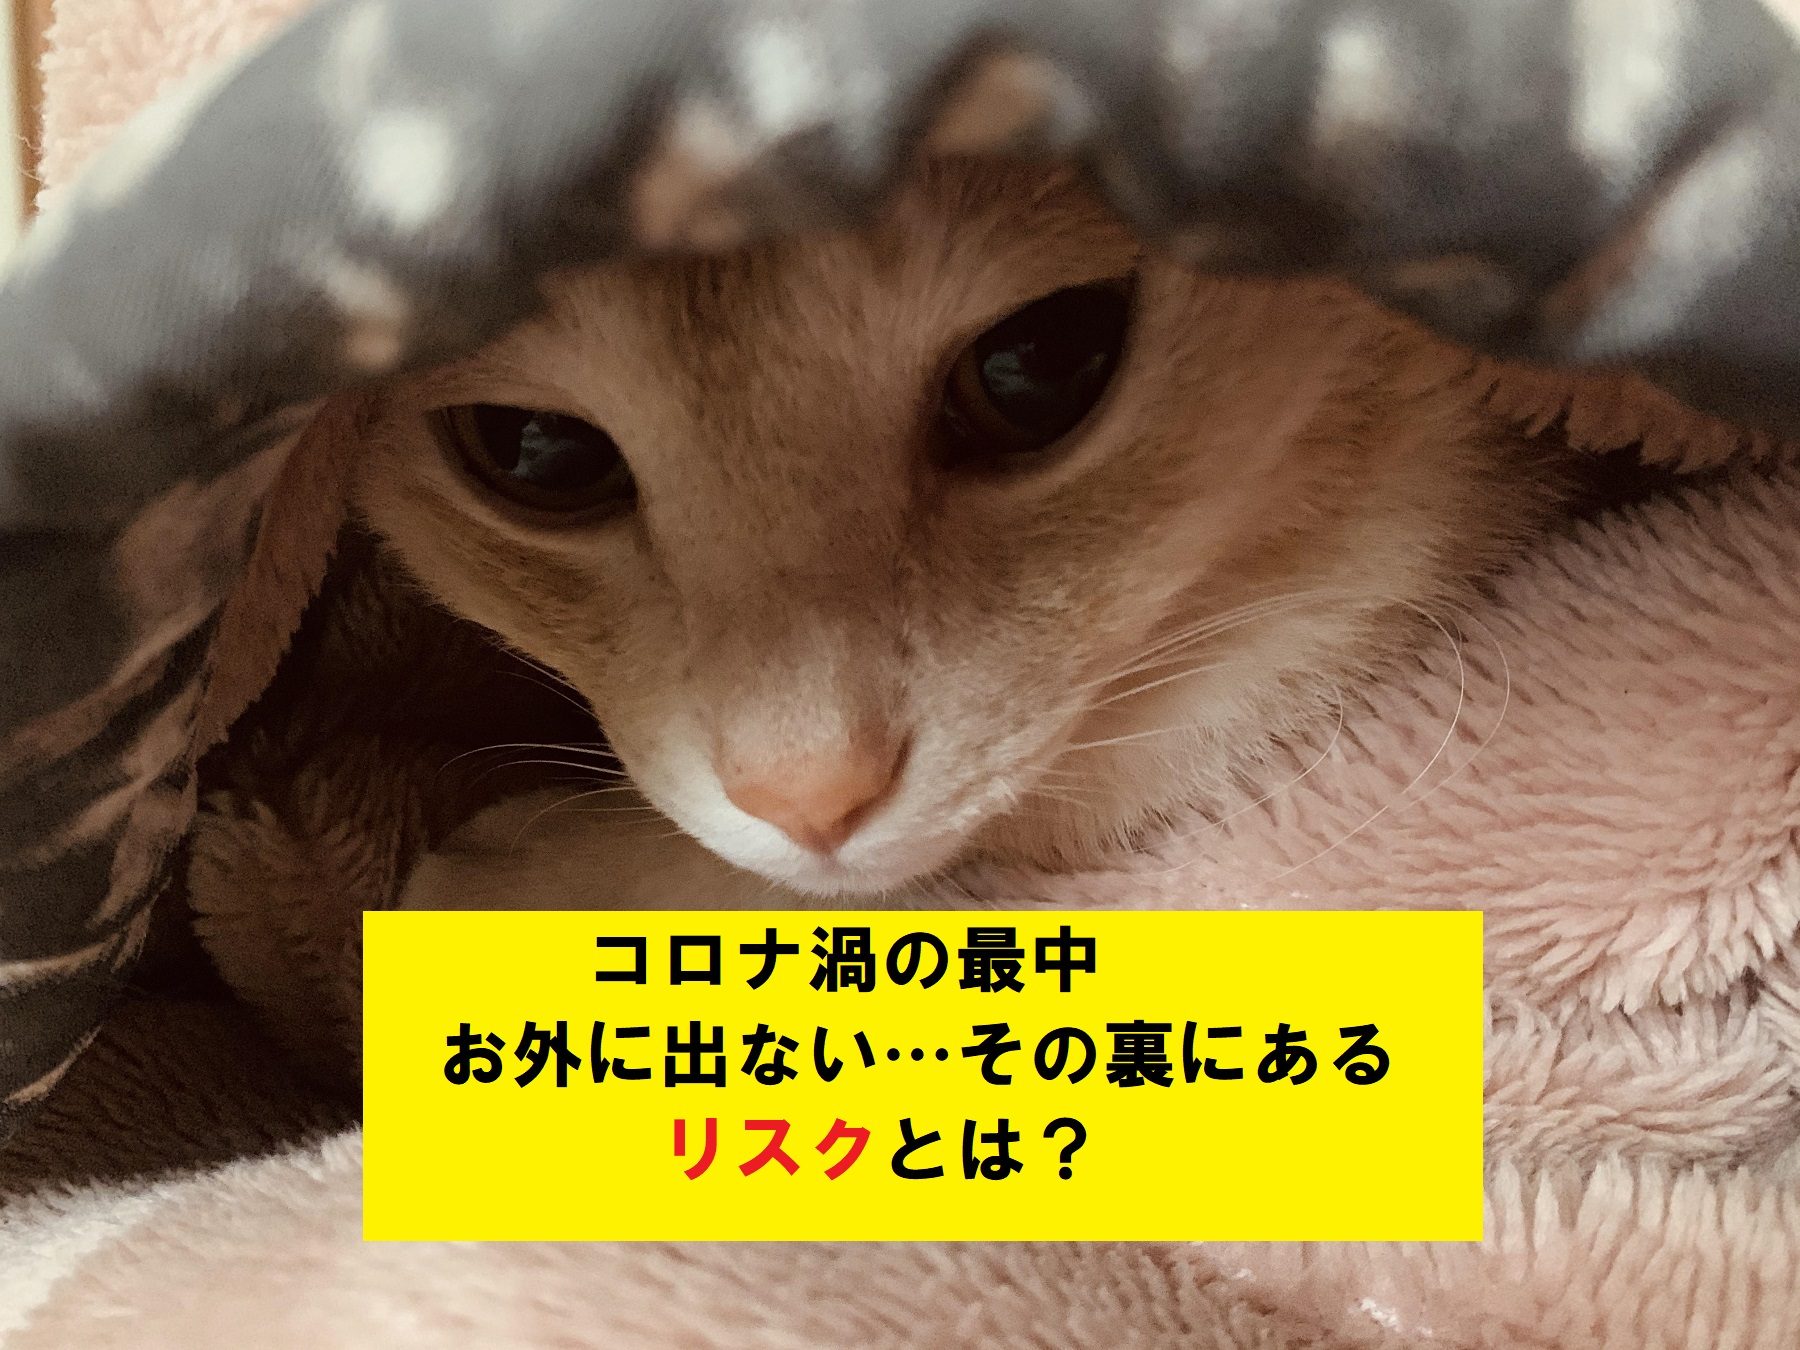 ATU　福岡　警備　毛布にくるまった猫